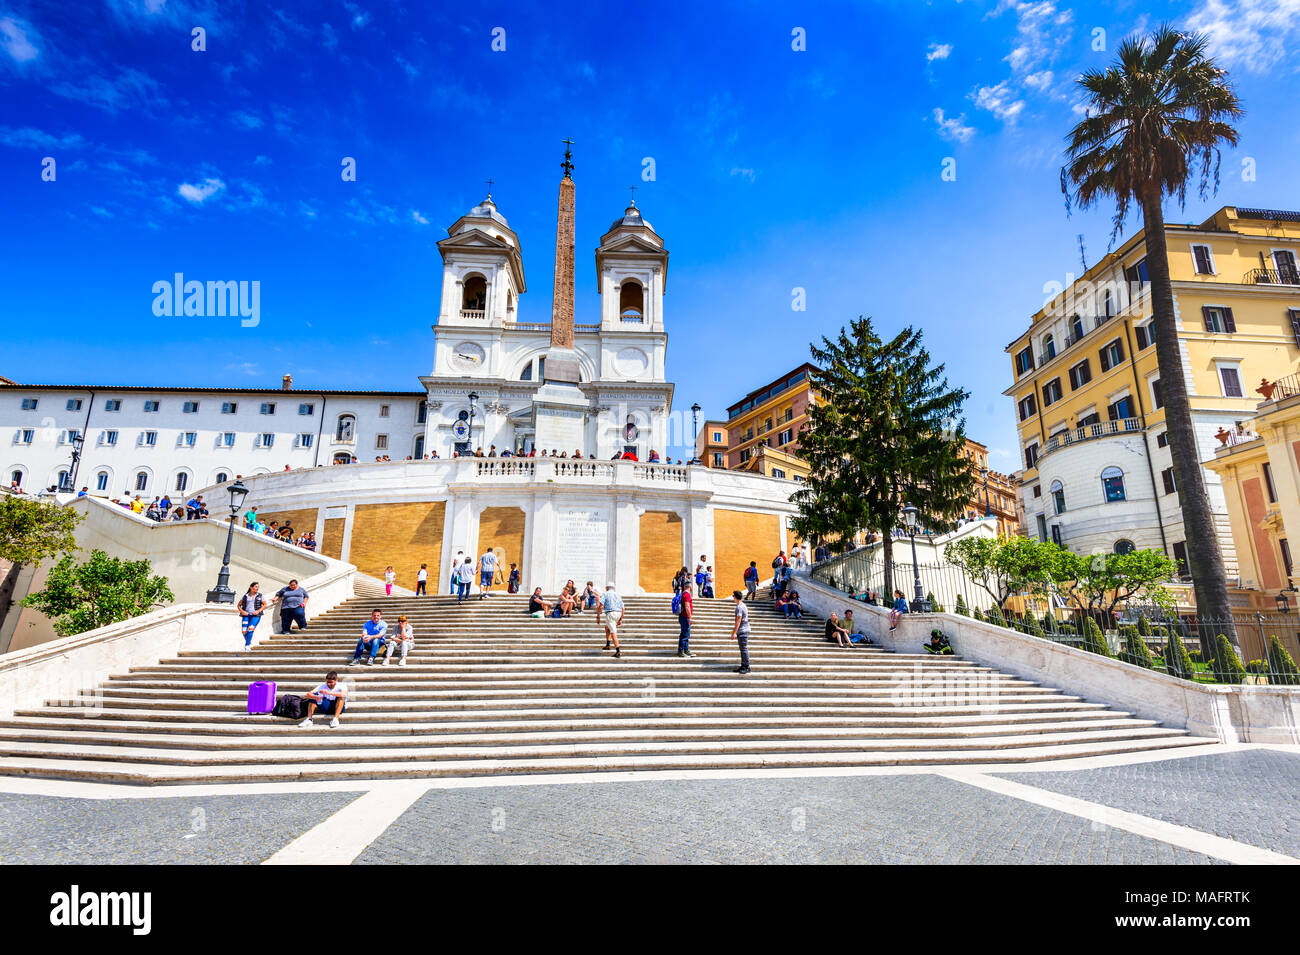 Rom, Italien, April 2017: Piazza di Spagna und der Trinita dei monti Kirche, römische Stadtbild Landschaft. Stockfoto